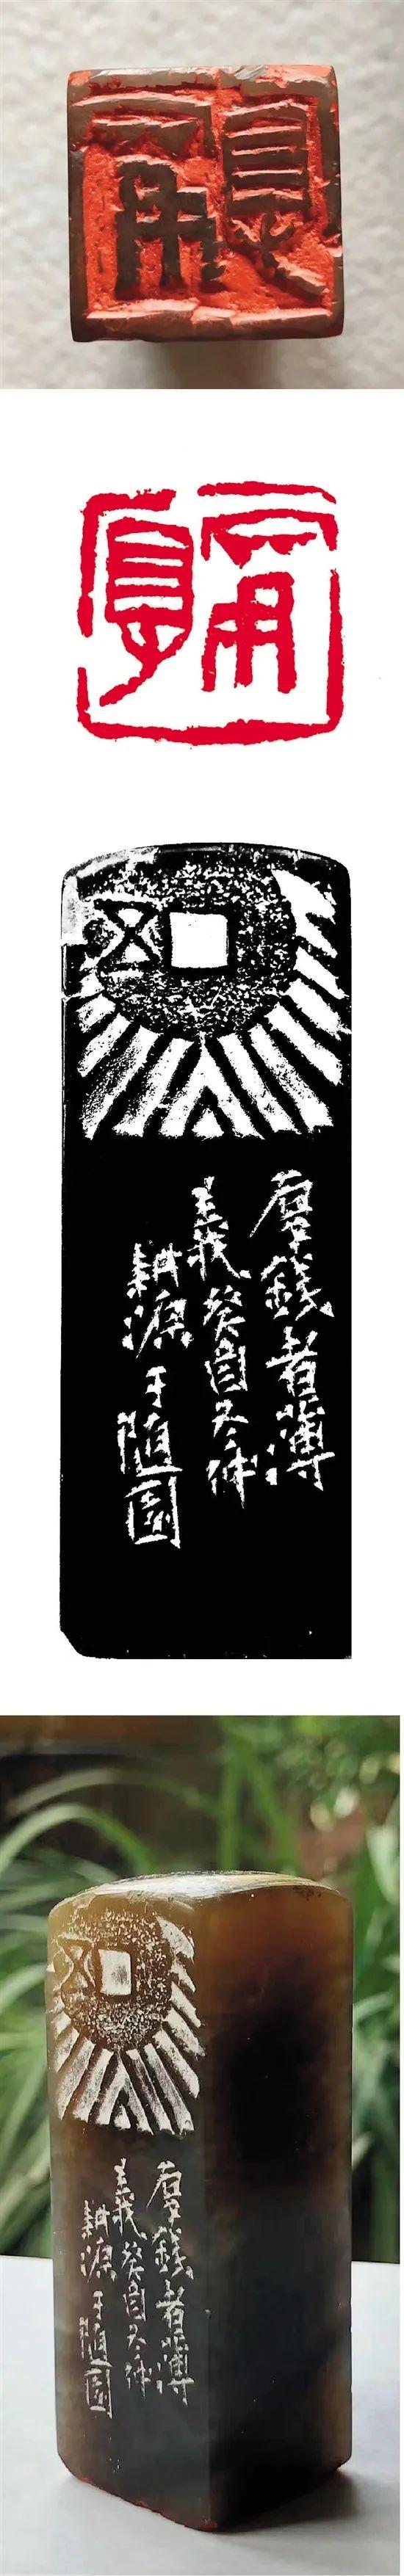 篆刻风流印石先——中国四大印石欣赏·巴林篇